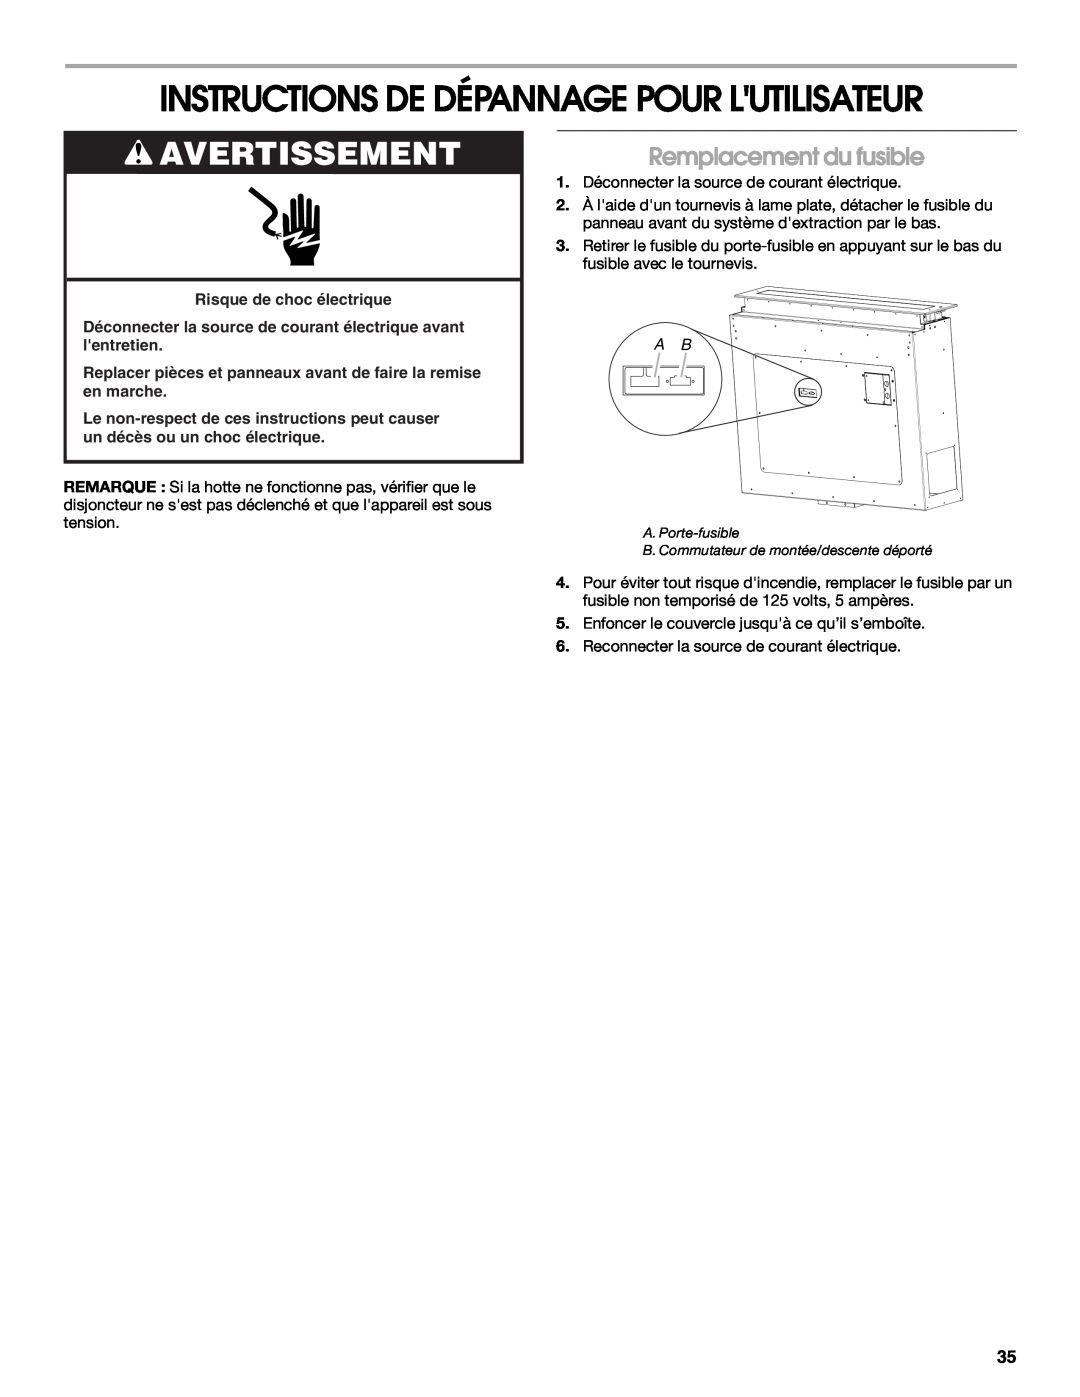 Jenn-Air LIB0057678, W10526413C Instructions De Dépannage Pour Lutilisateur, Remplacement du fusible, Avertissement 